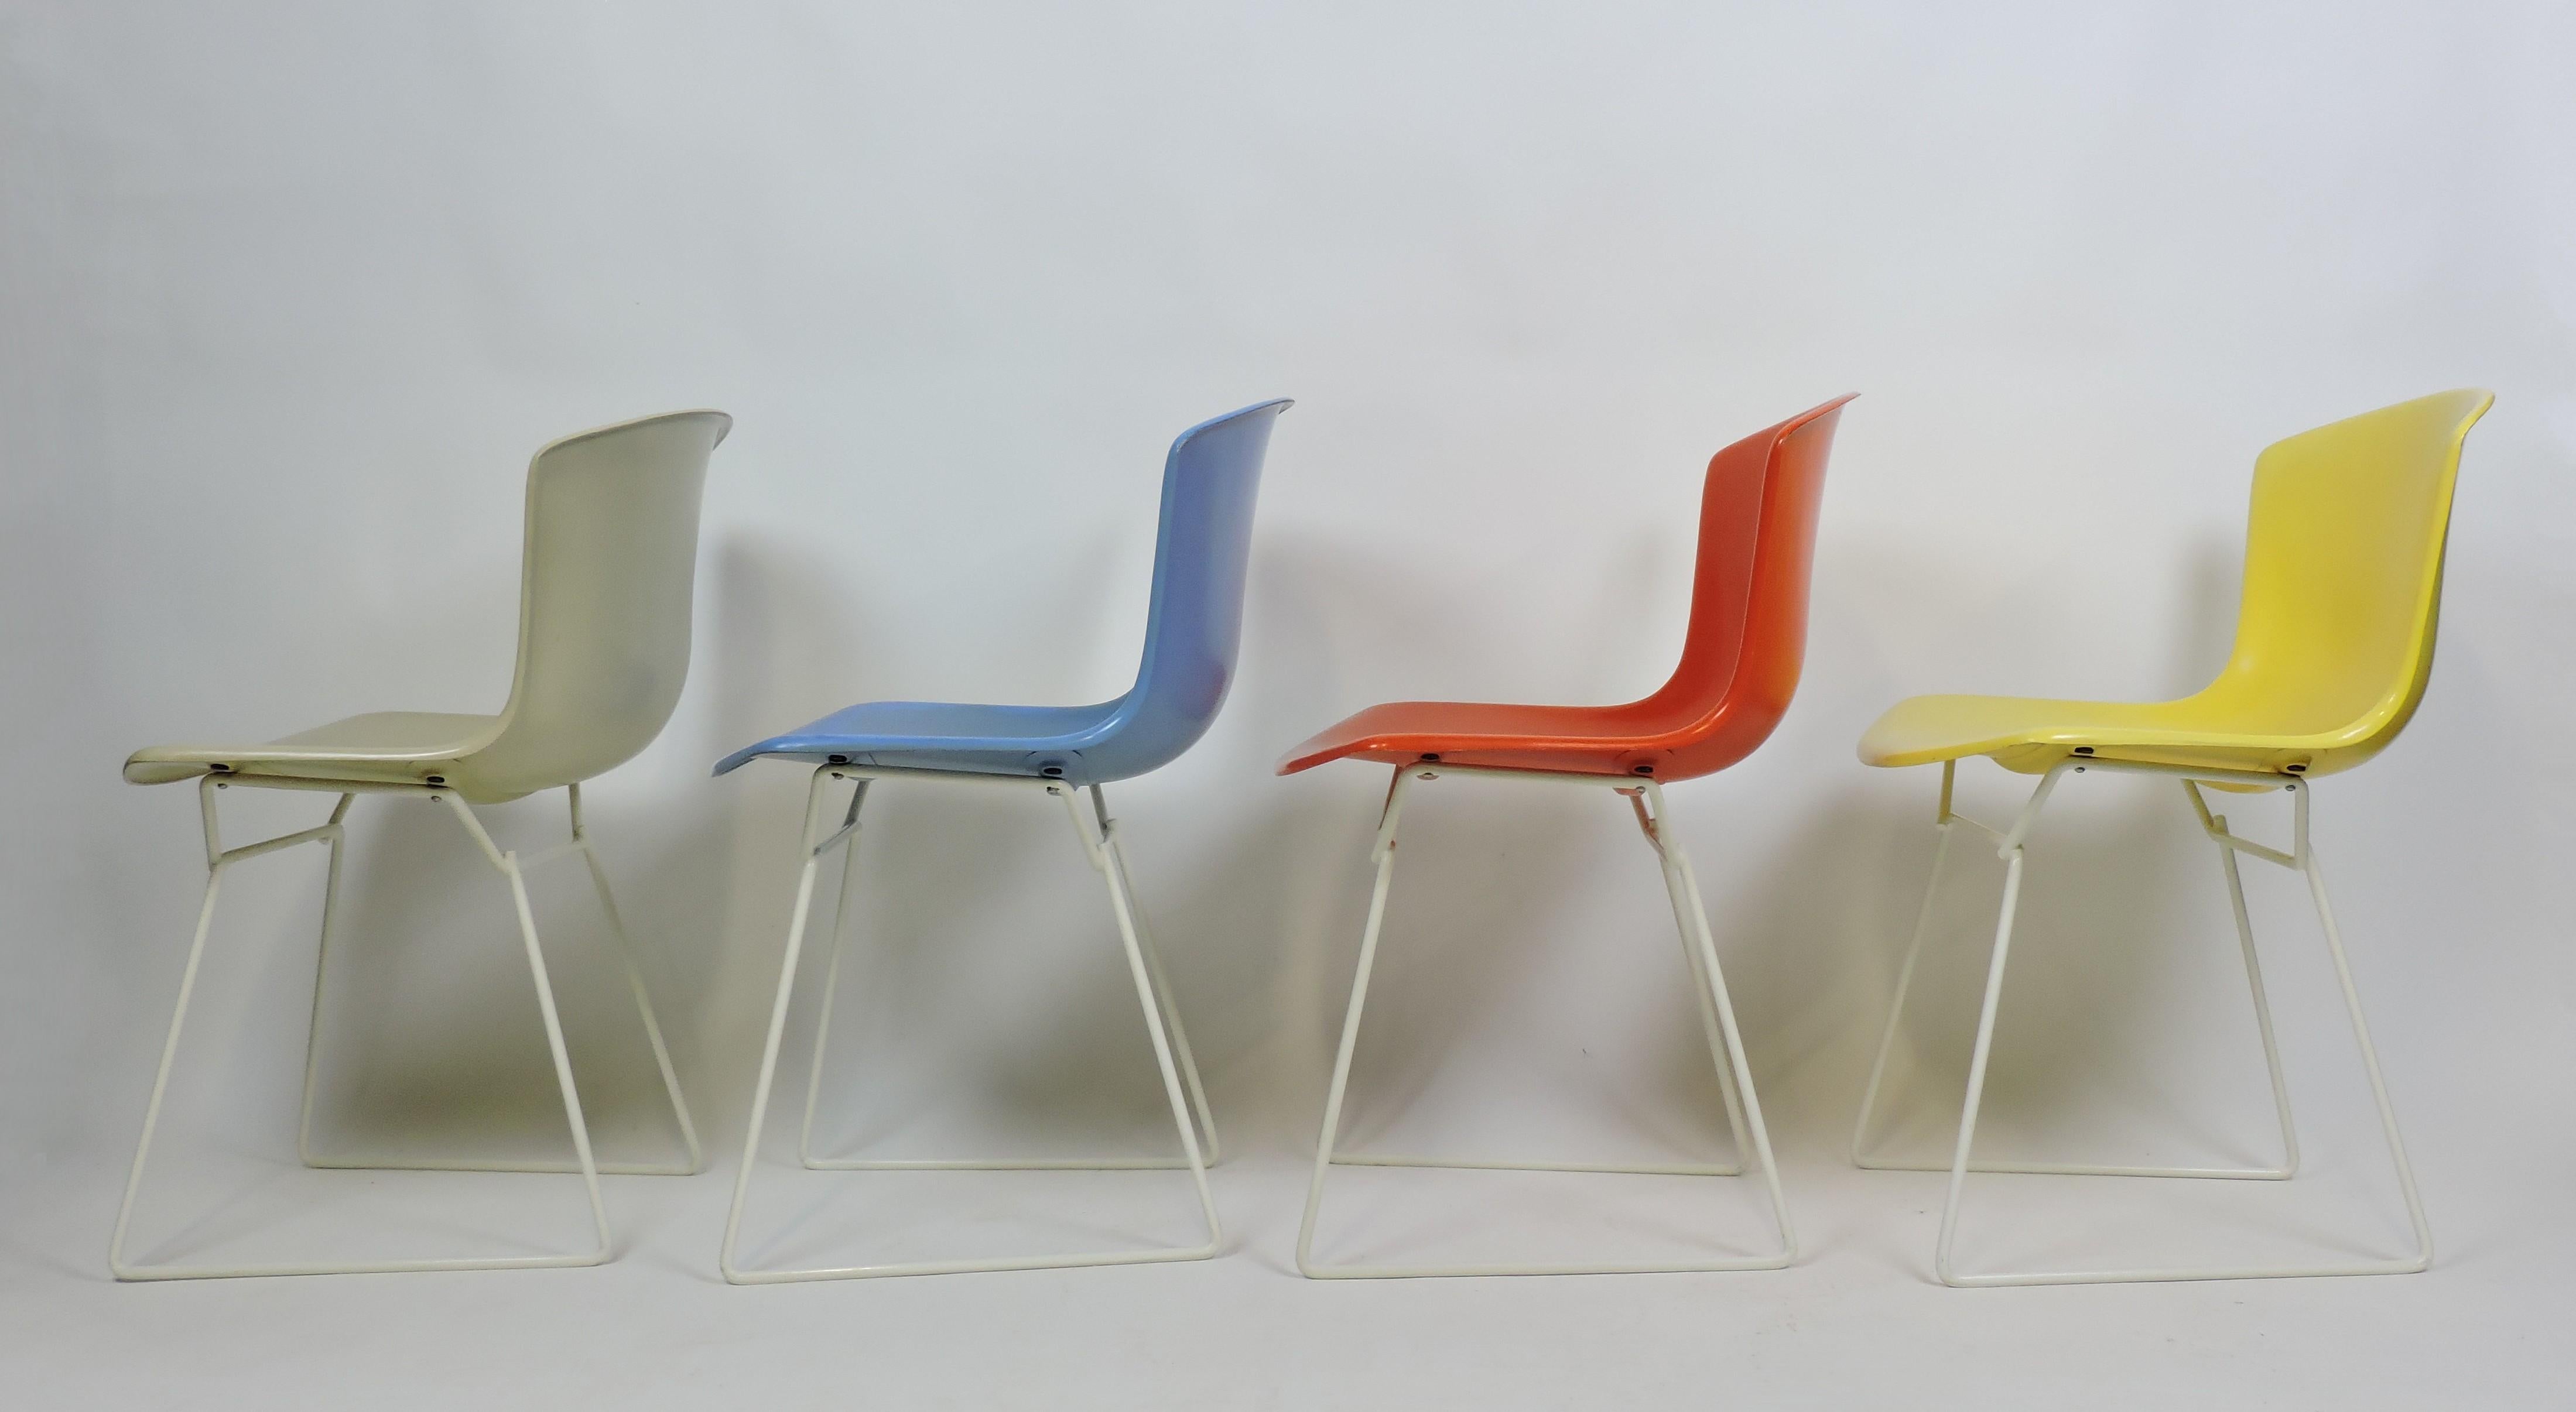 Satz von vier geformten Schalenstühlen, entworfen von Harry Bertoia und hergestellt von Knoll. Dieses sehr frühe Set, das 1960 auf den Markt kam, stammt aus dem Jahr 1963 und enthält vier Farben - Beige, Blau, Rot und Gelb - auf einem weißen Rahmen,